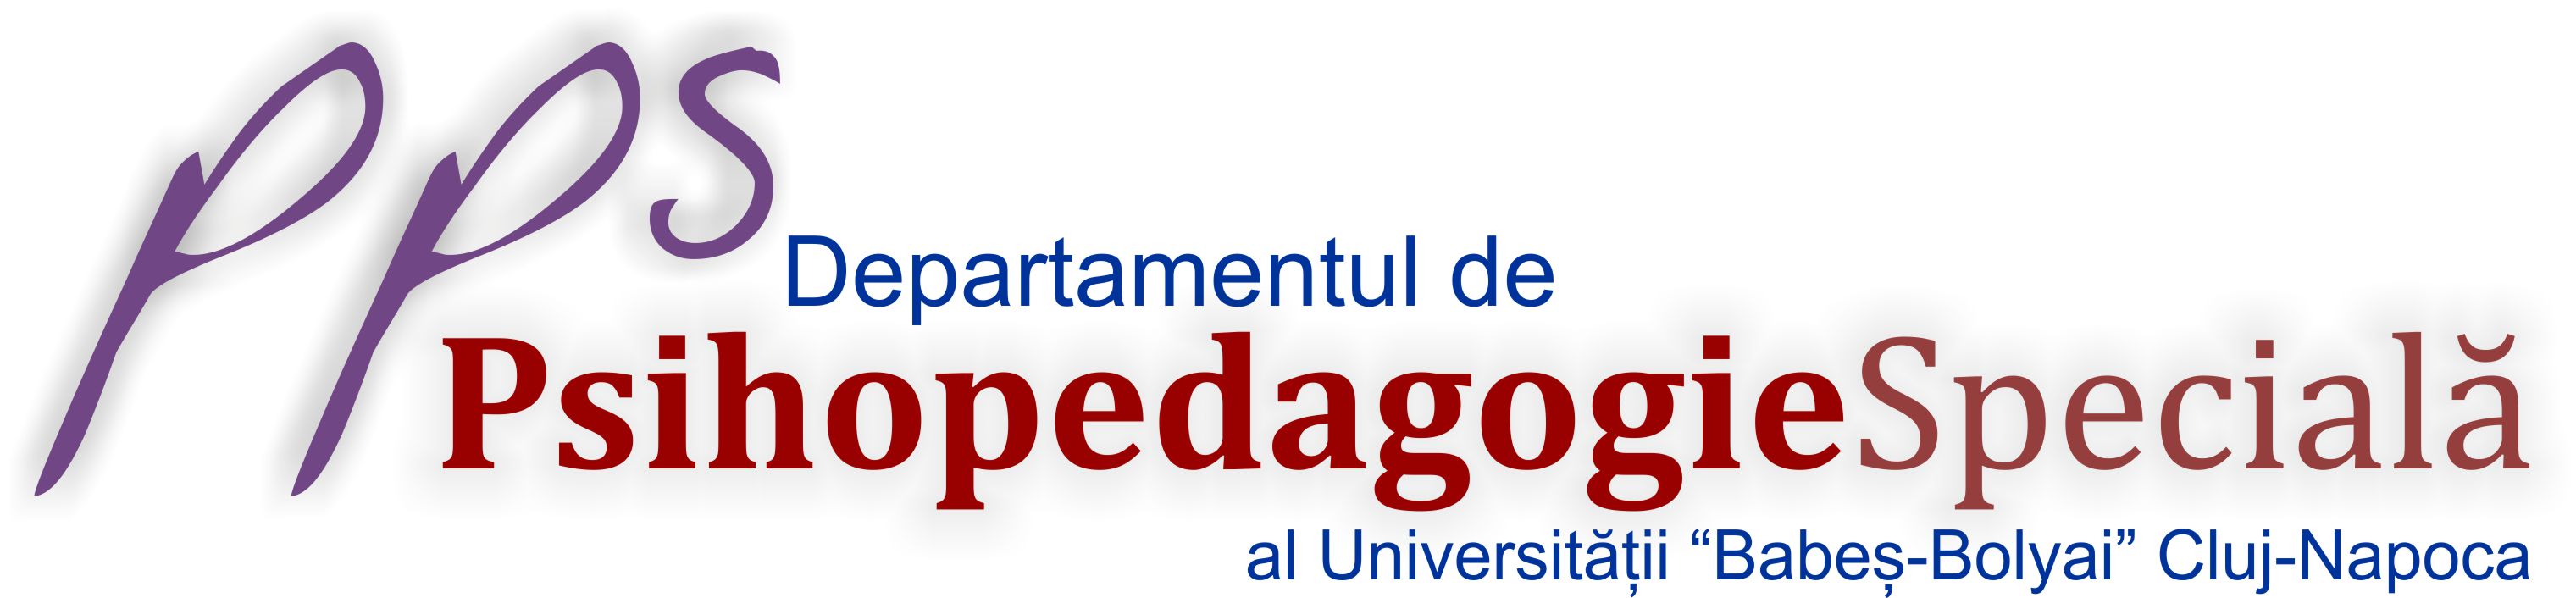 Departamentul de Psihopedagogie Specială - Universitatea Babeș-Bolyai din Cluj-Napoca